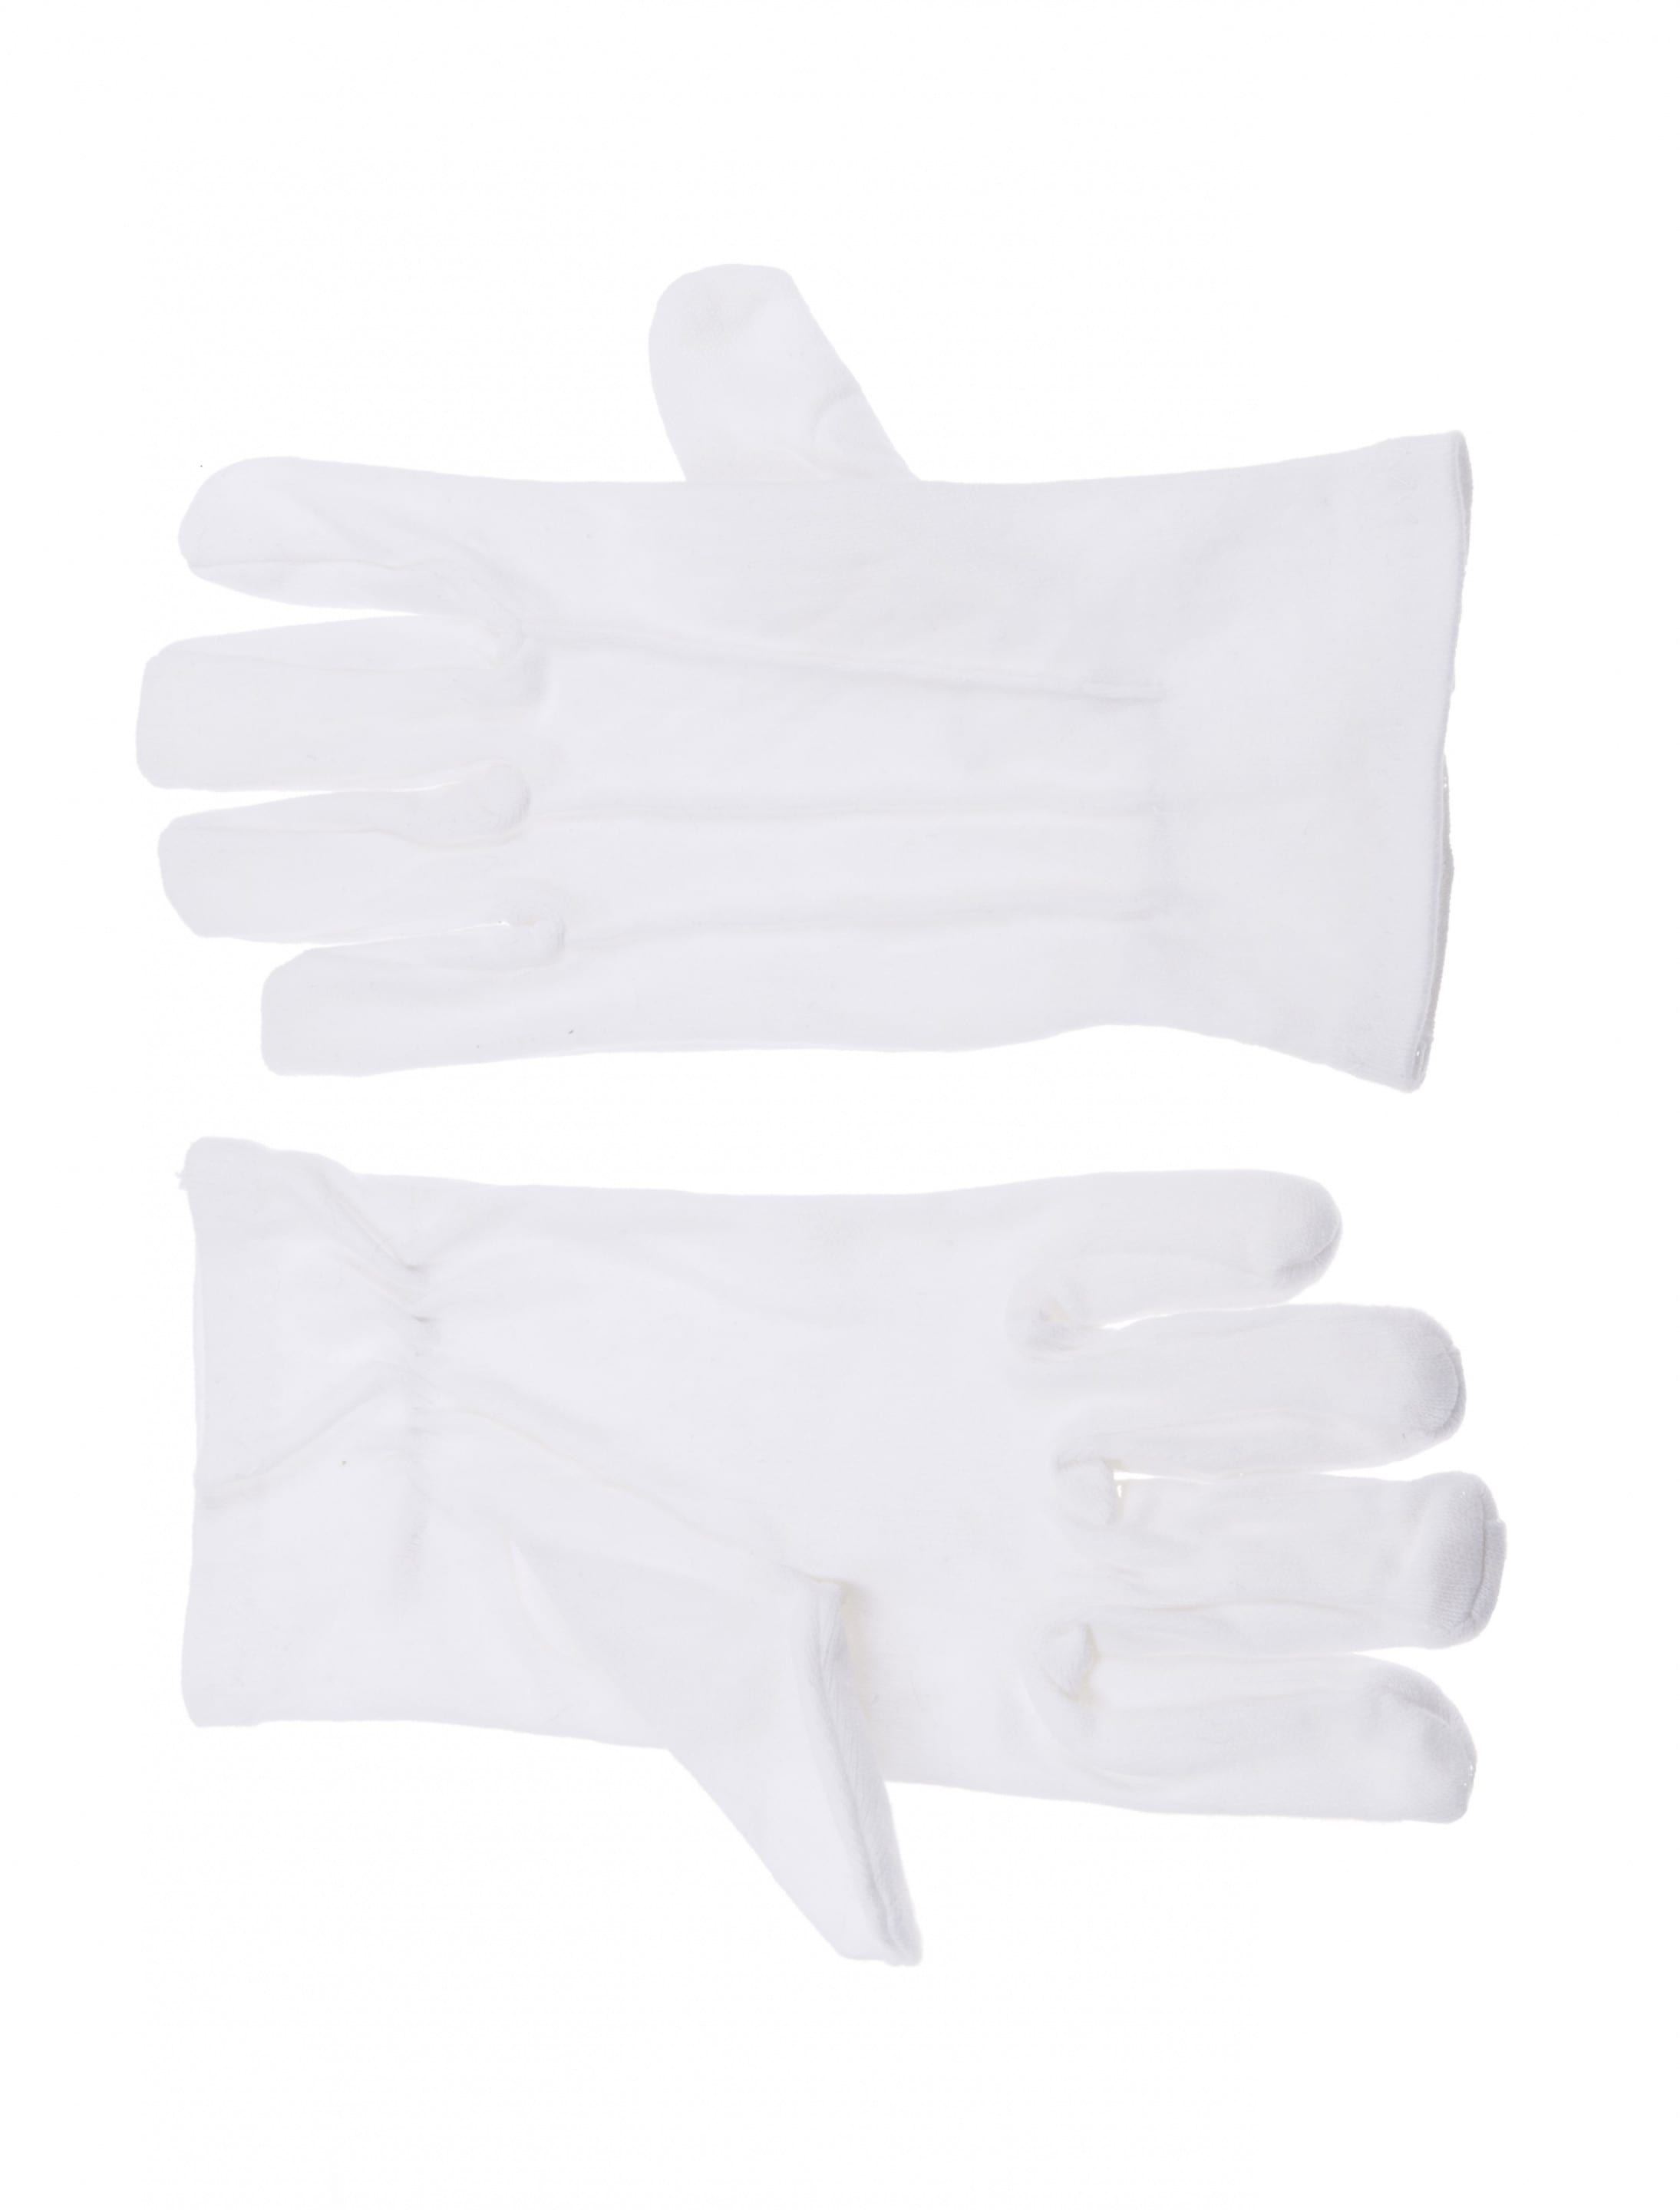 Handschuhe Baumwolle mit Naht weiß S